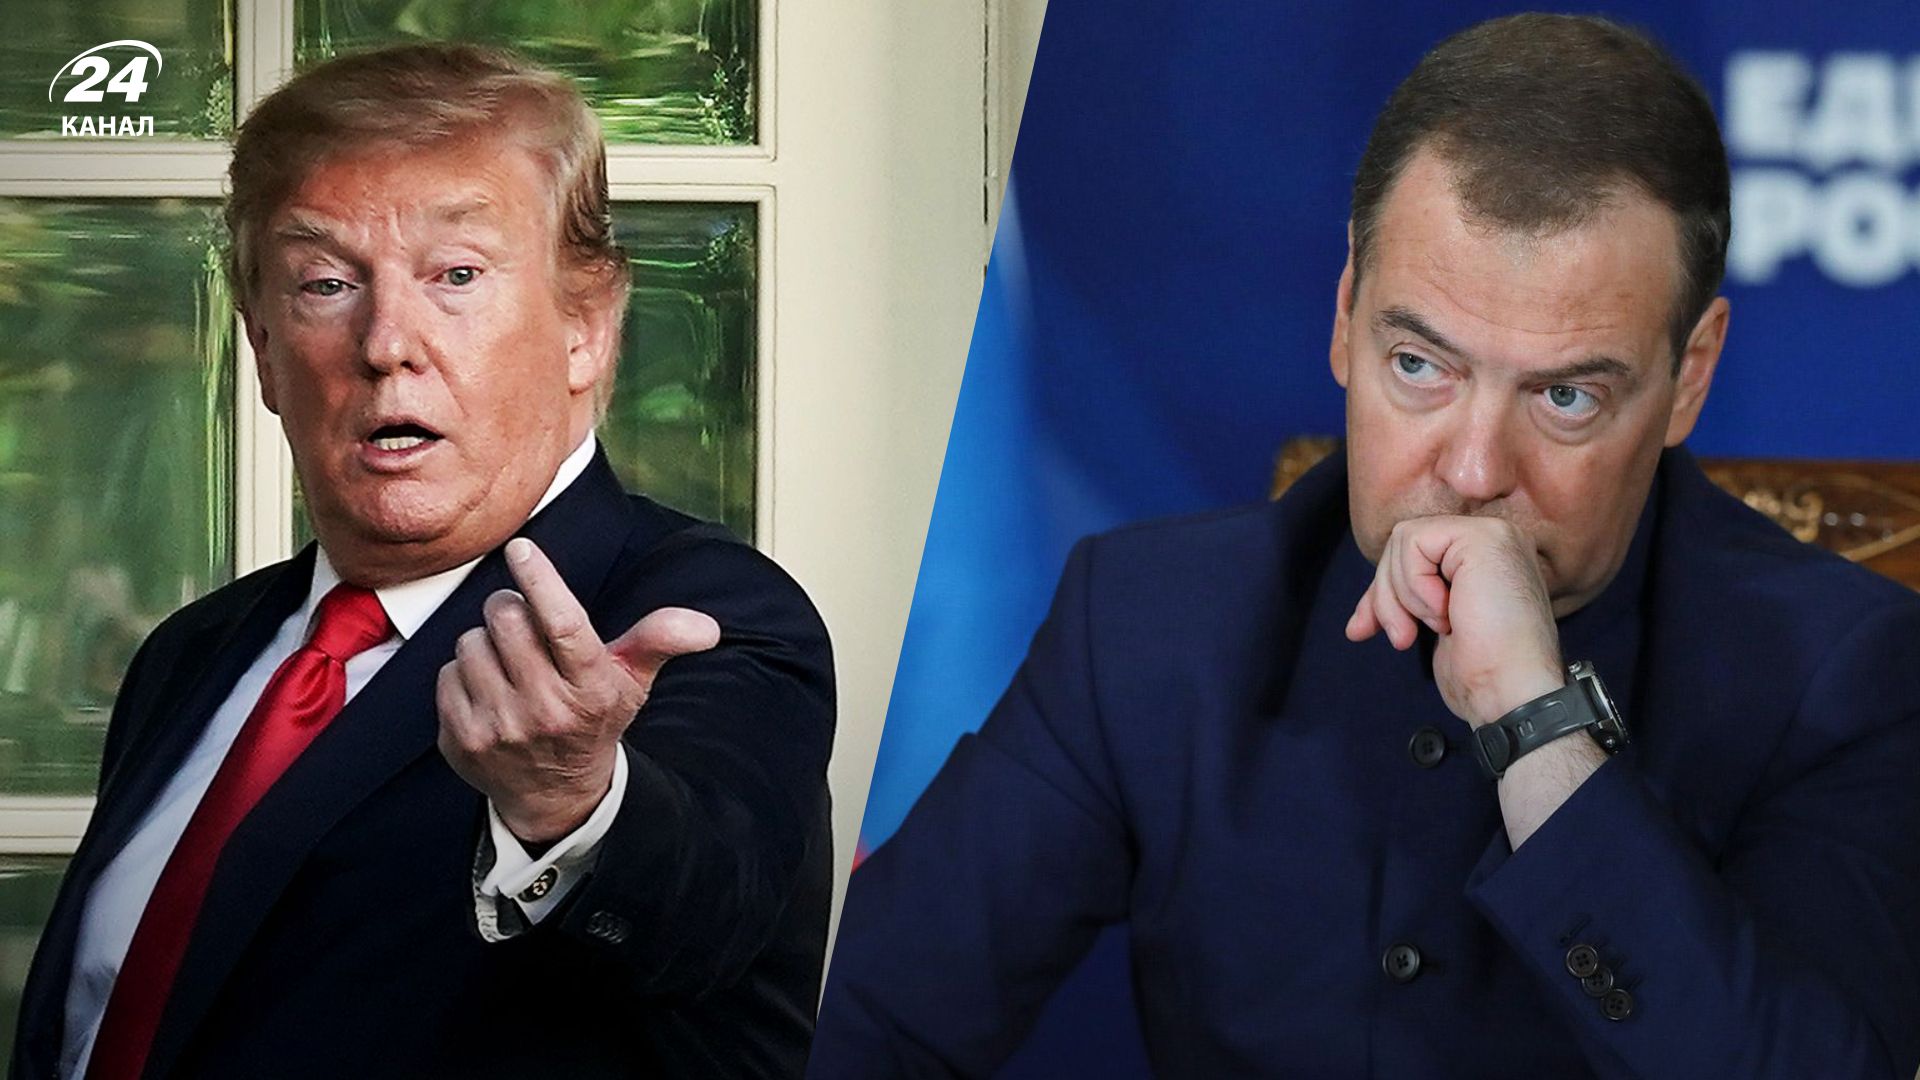 Медведев грубо отреагировал на сообщение Трампа об аресте 21 марта